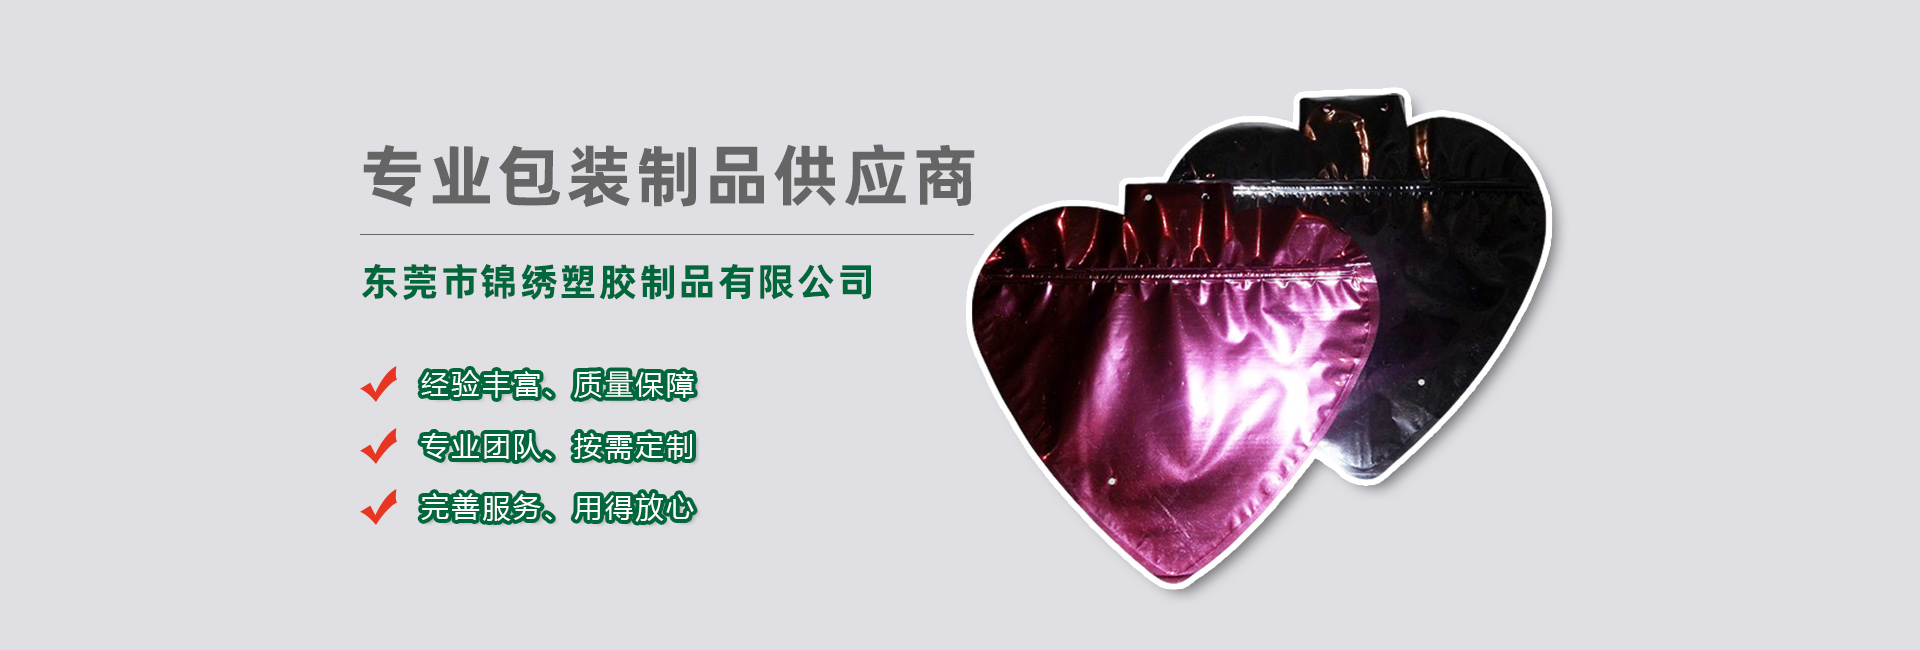 重庆食品袋banner